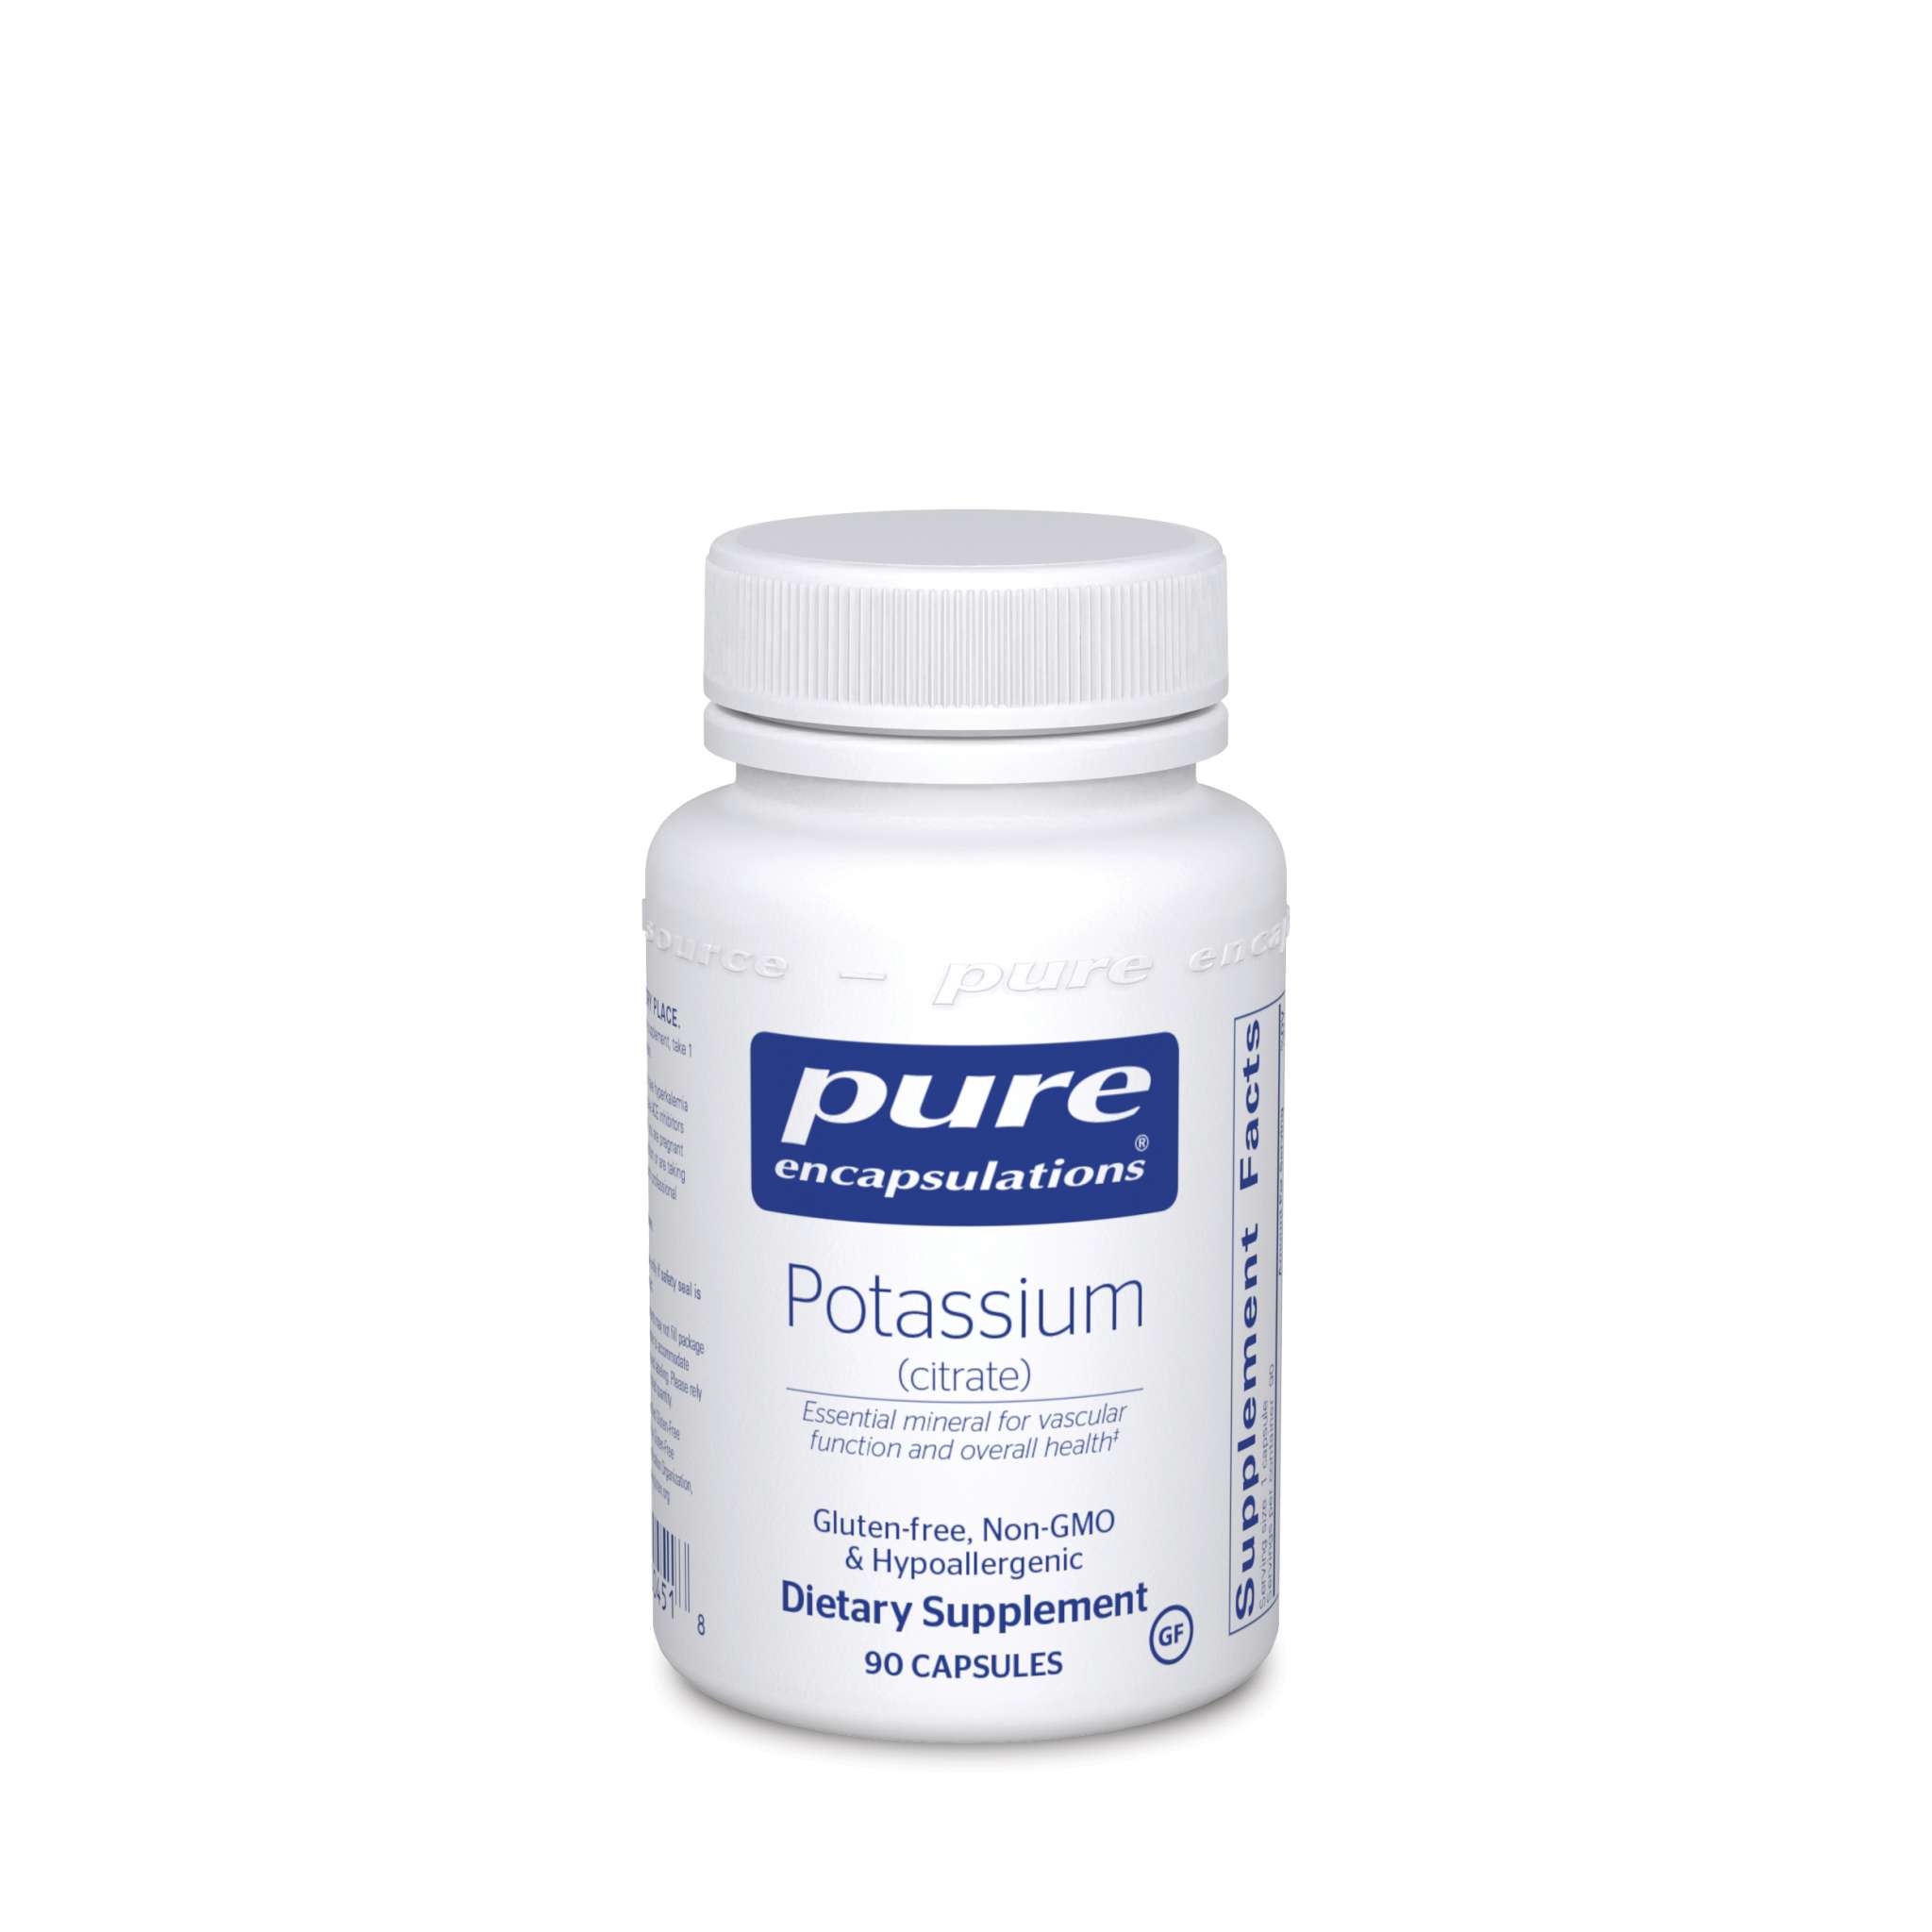 Pure Encapsulations - Potassium 200 mg Citrate